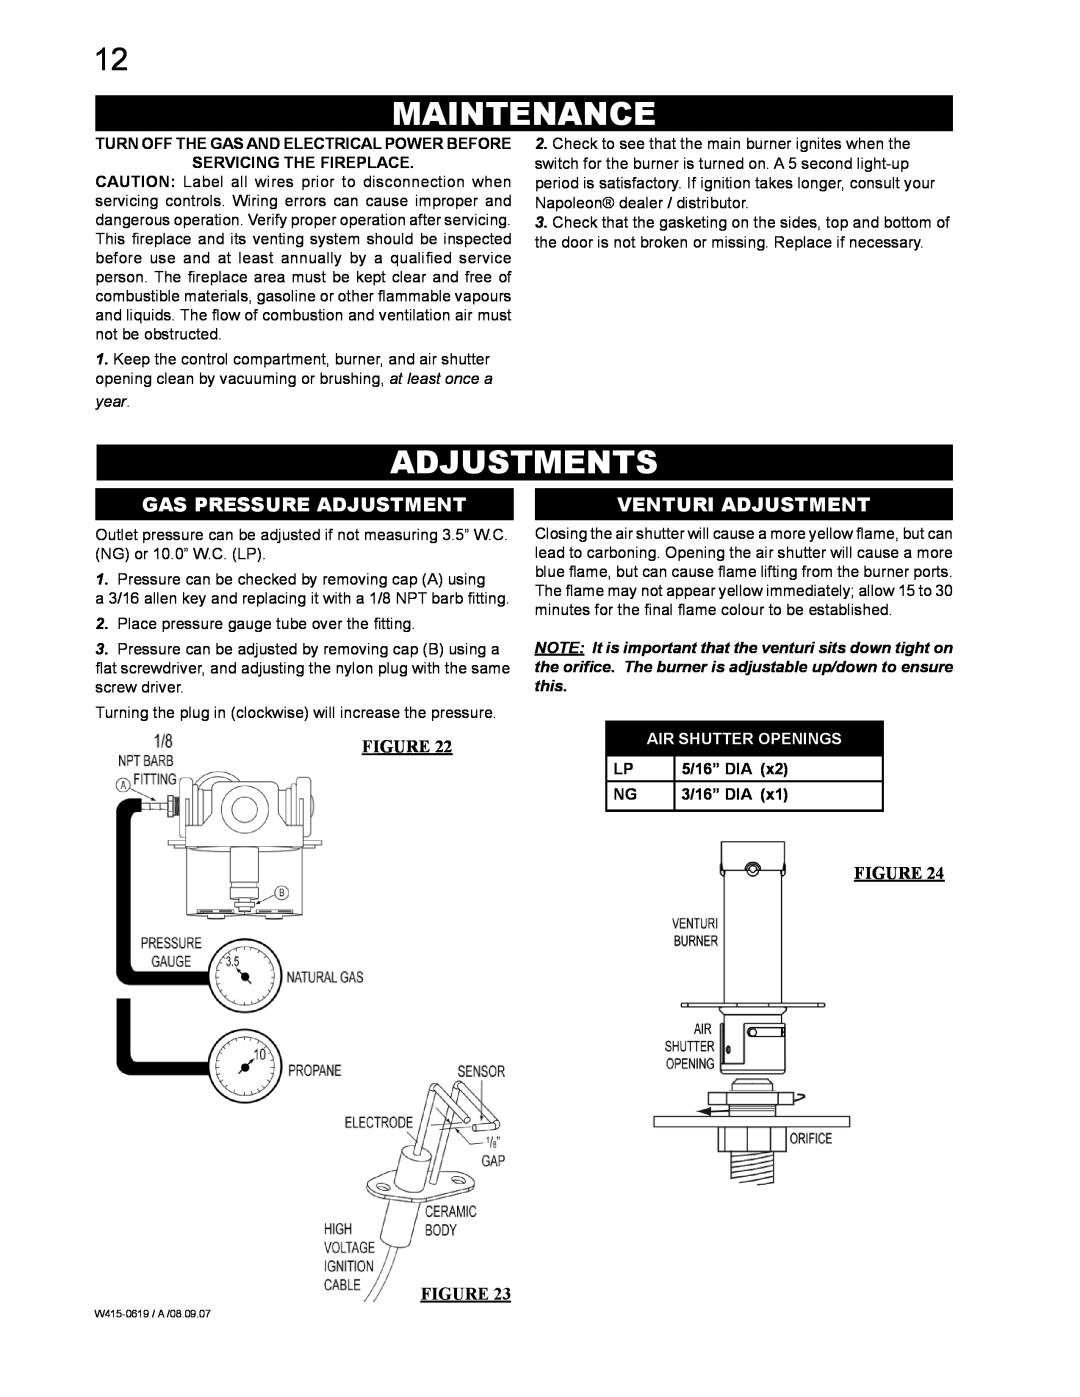 Napoleon Fireplaces GT8P, GT8N manual Maintenance, Adjustments, Gas Pressure Adjustment, Venturi Adjustment, Figure Figure 